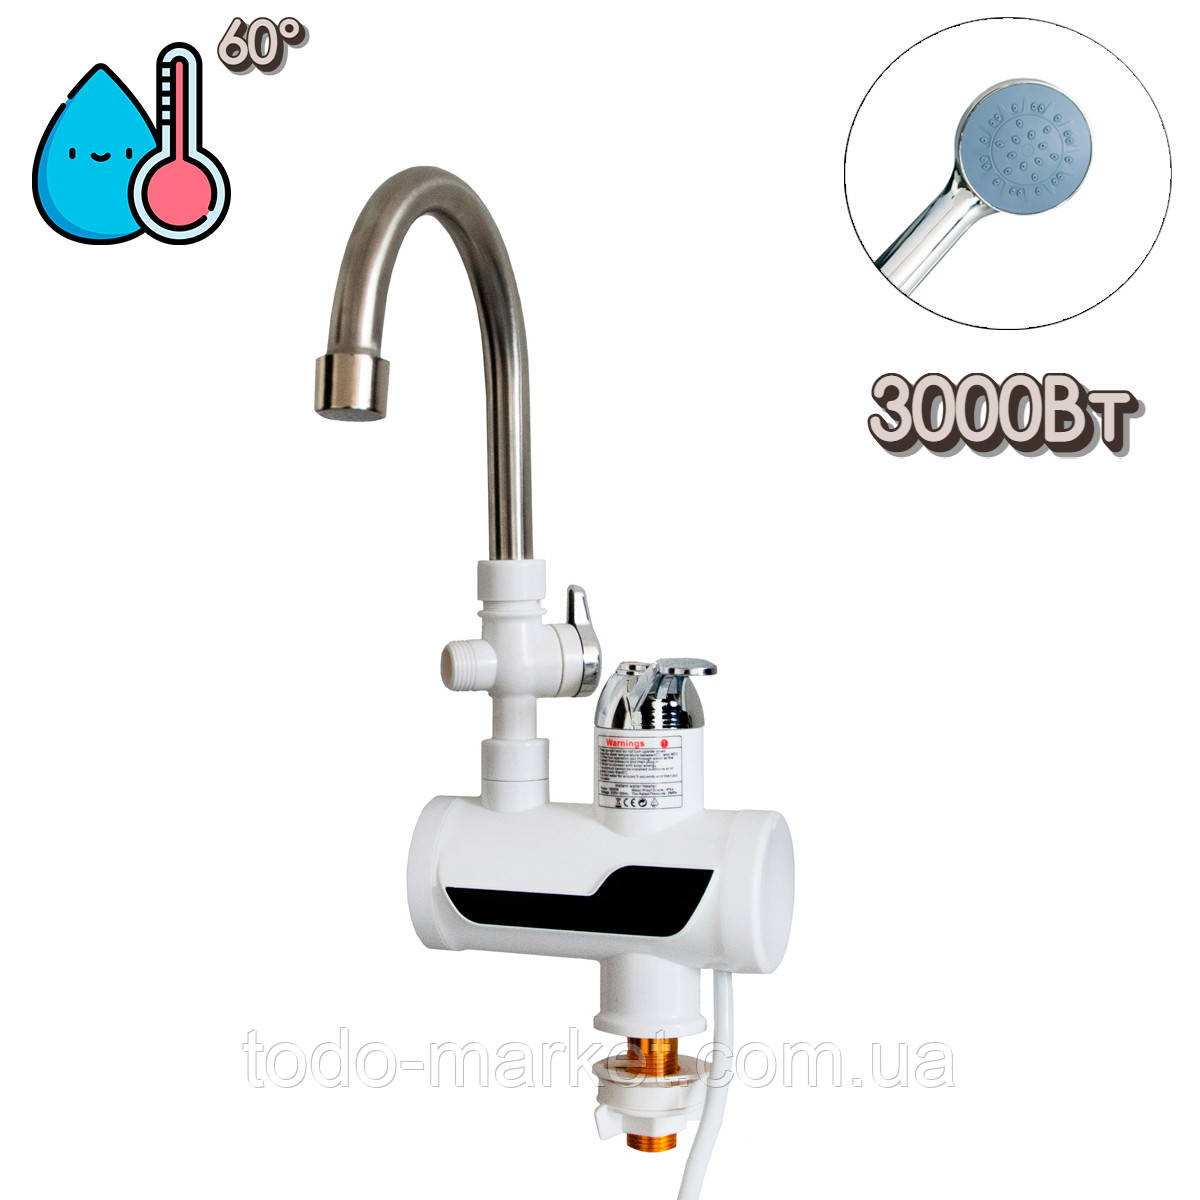 Проточний водонагрівач Water Faucet RX-001-3 3000 Вт електронагрівач води, проточний бойлер із лійкою (ST)